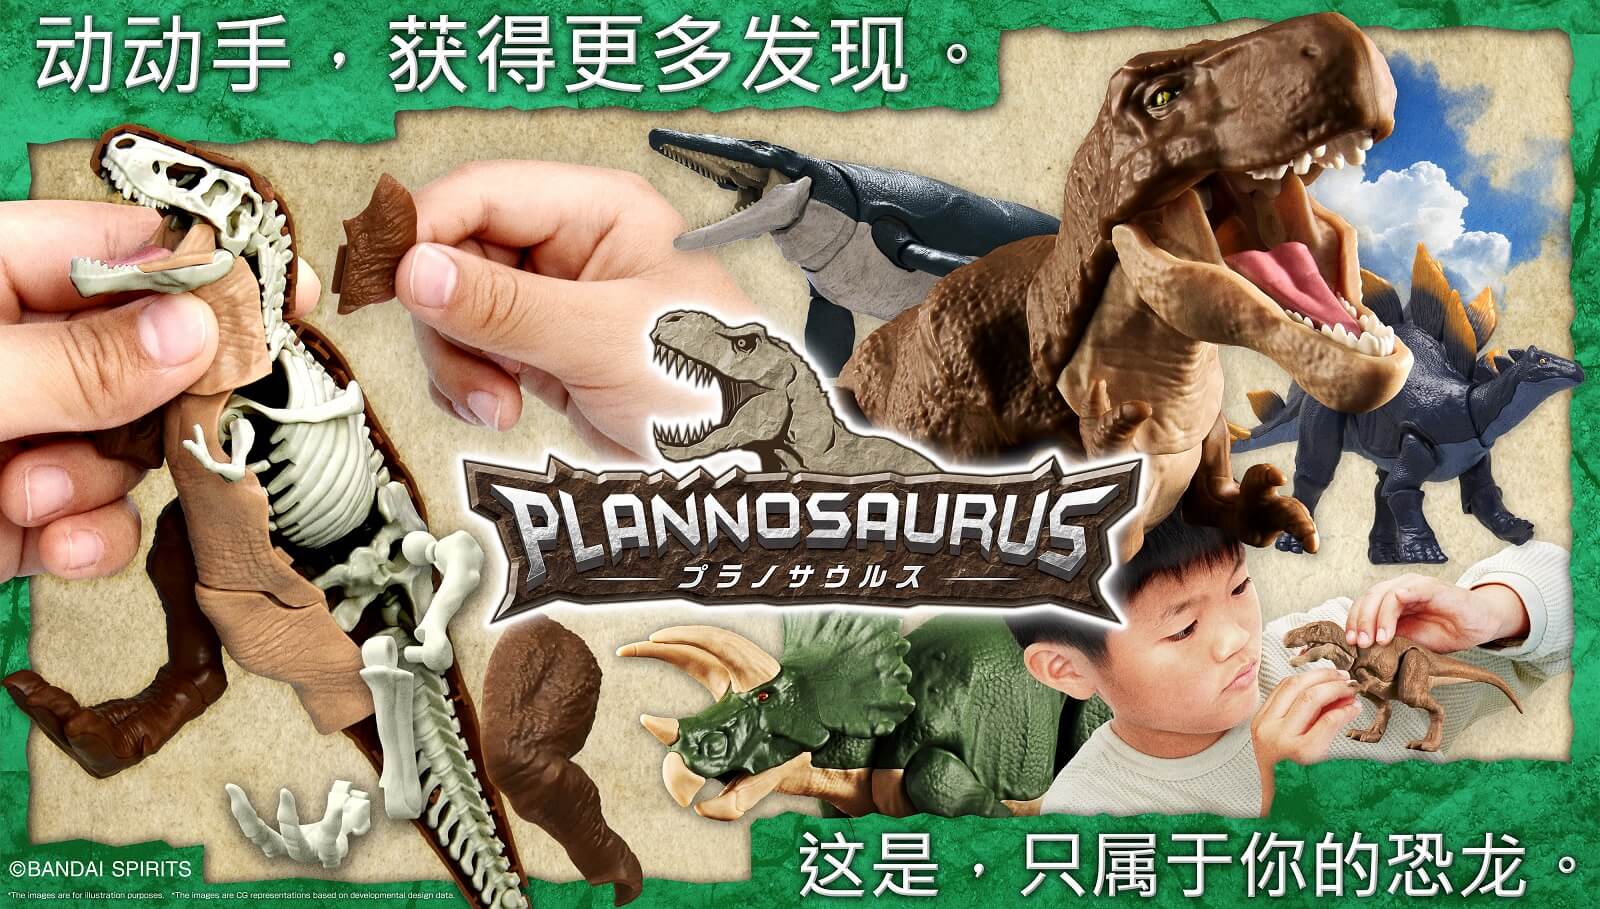 『恐龙拼装模型』特设页